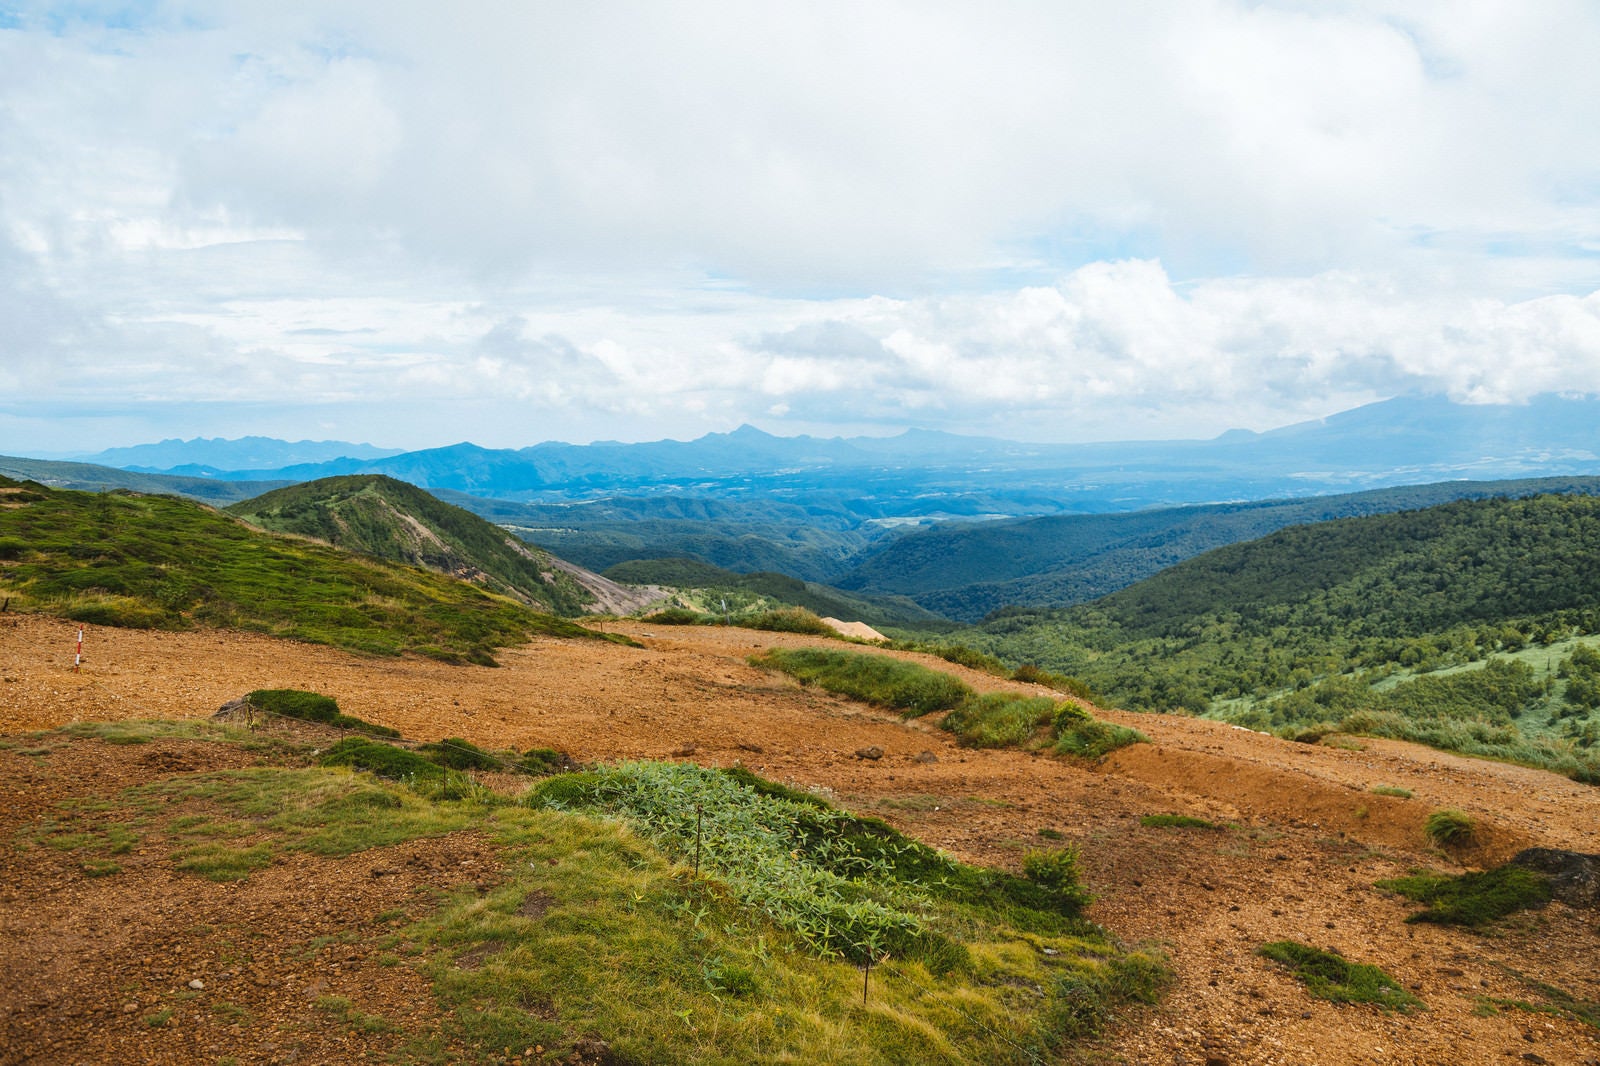 「毛無峠山頂から見える景観」の写真